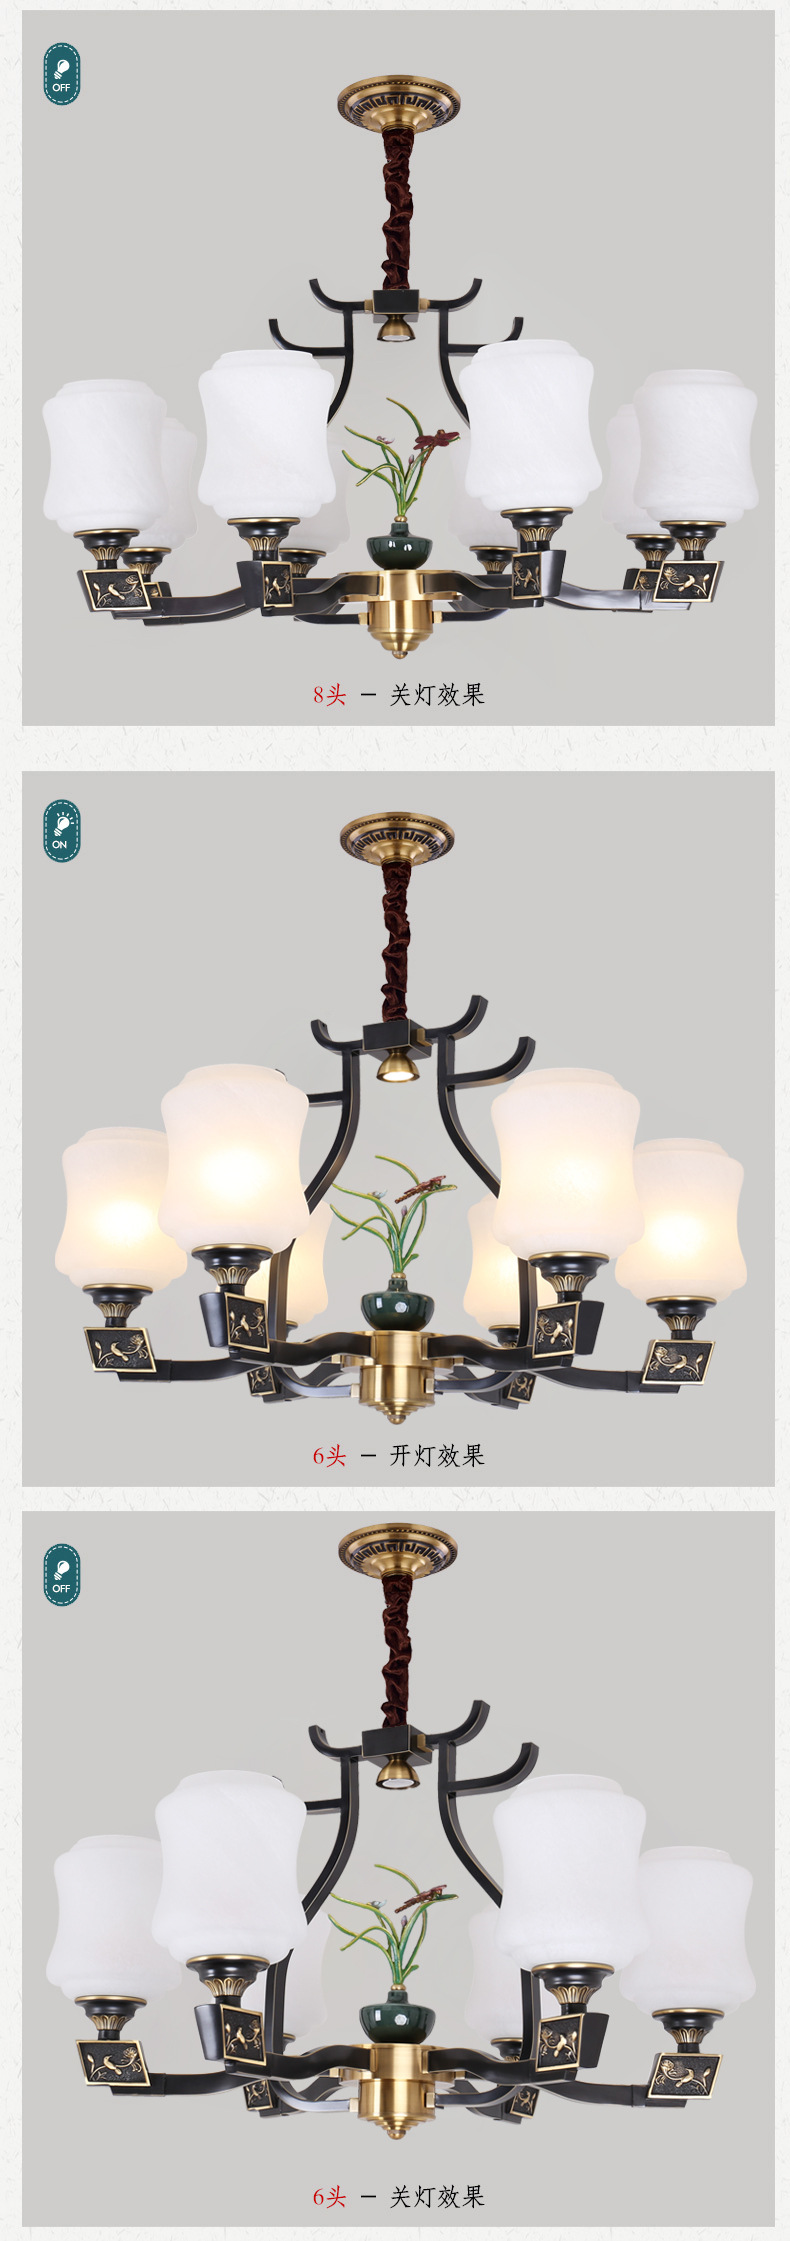 品牌厂家直销新中式吊灯中国风客厅餐厅卧室现代简约灯复古中式灯示例图7